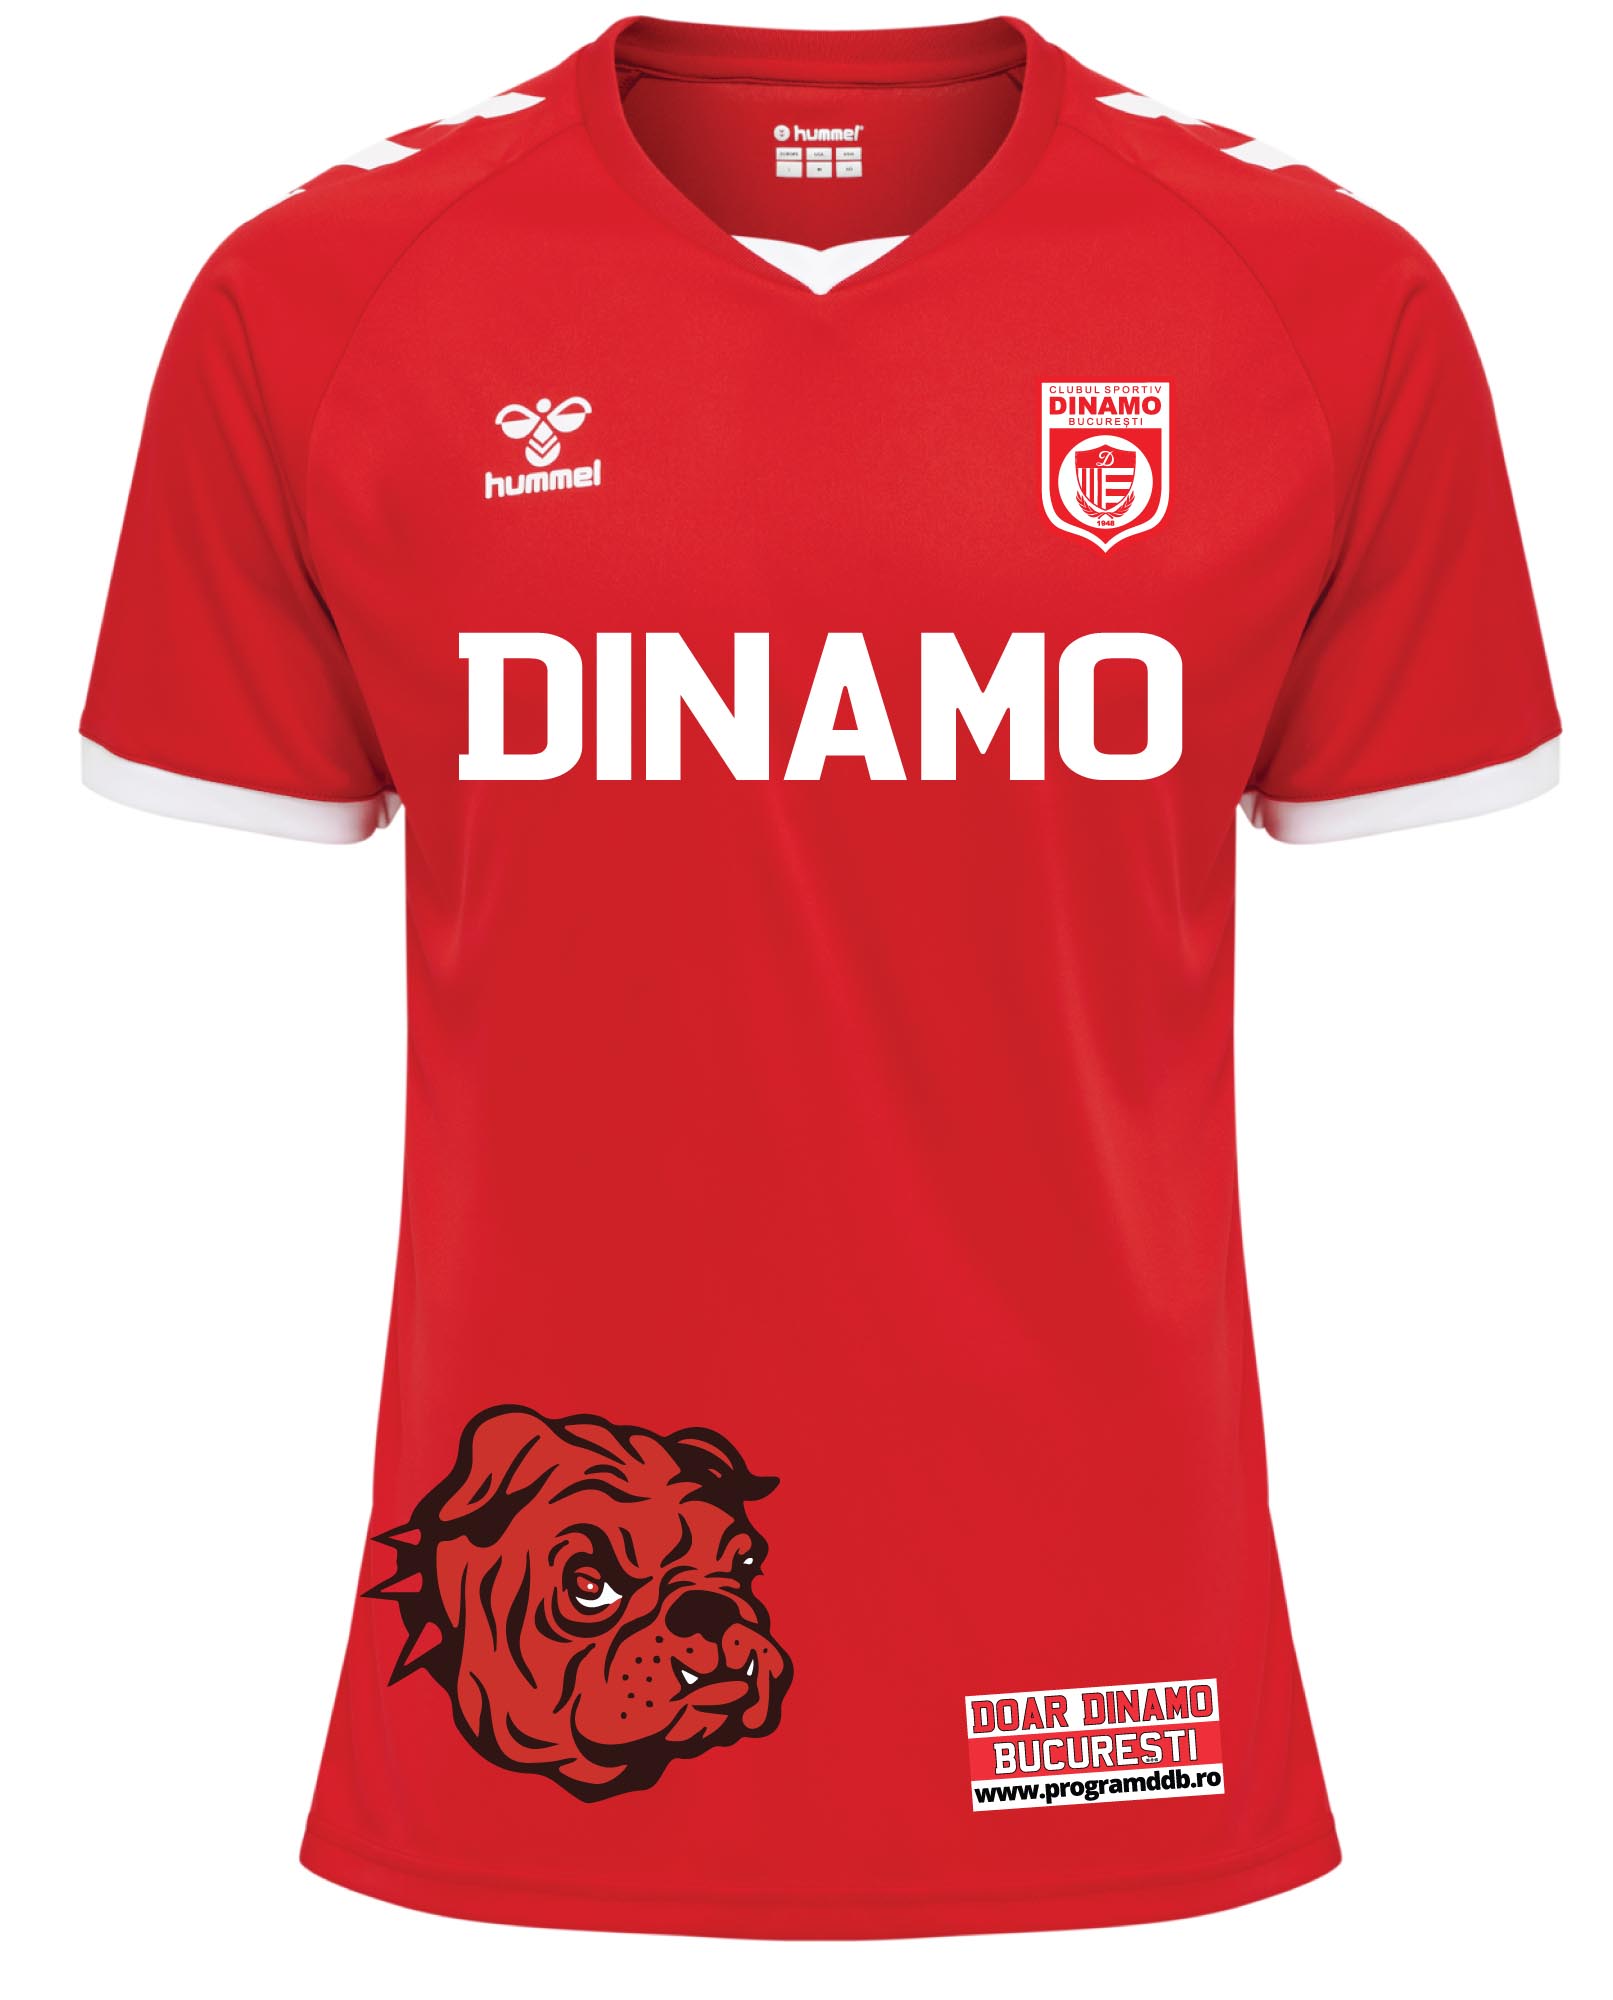 Tricou oficial de hummel - Dinamo - merasport